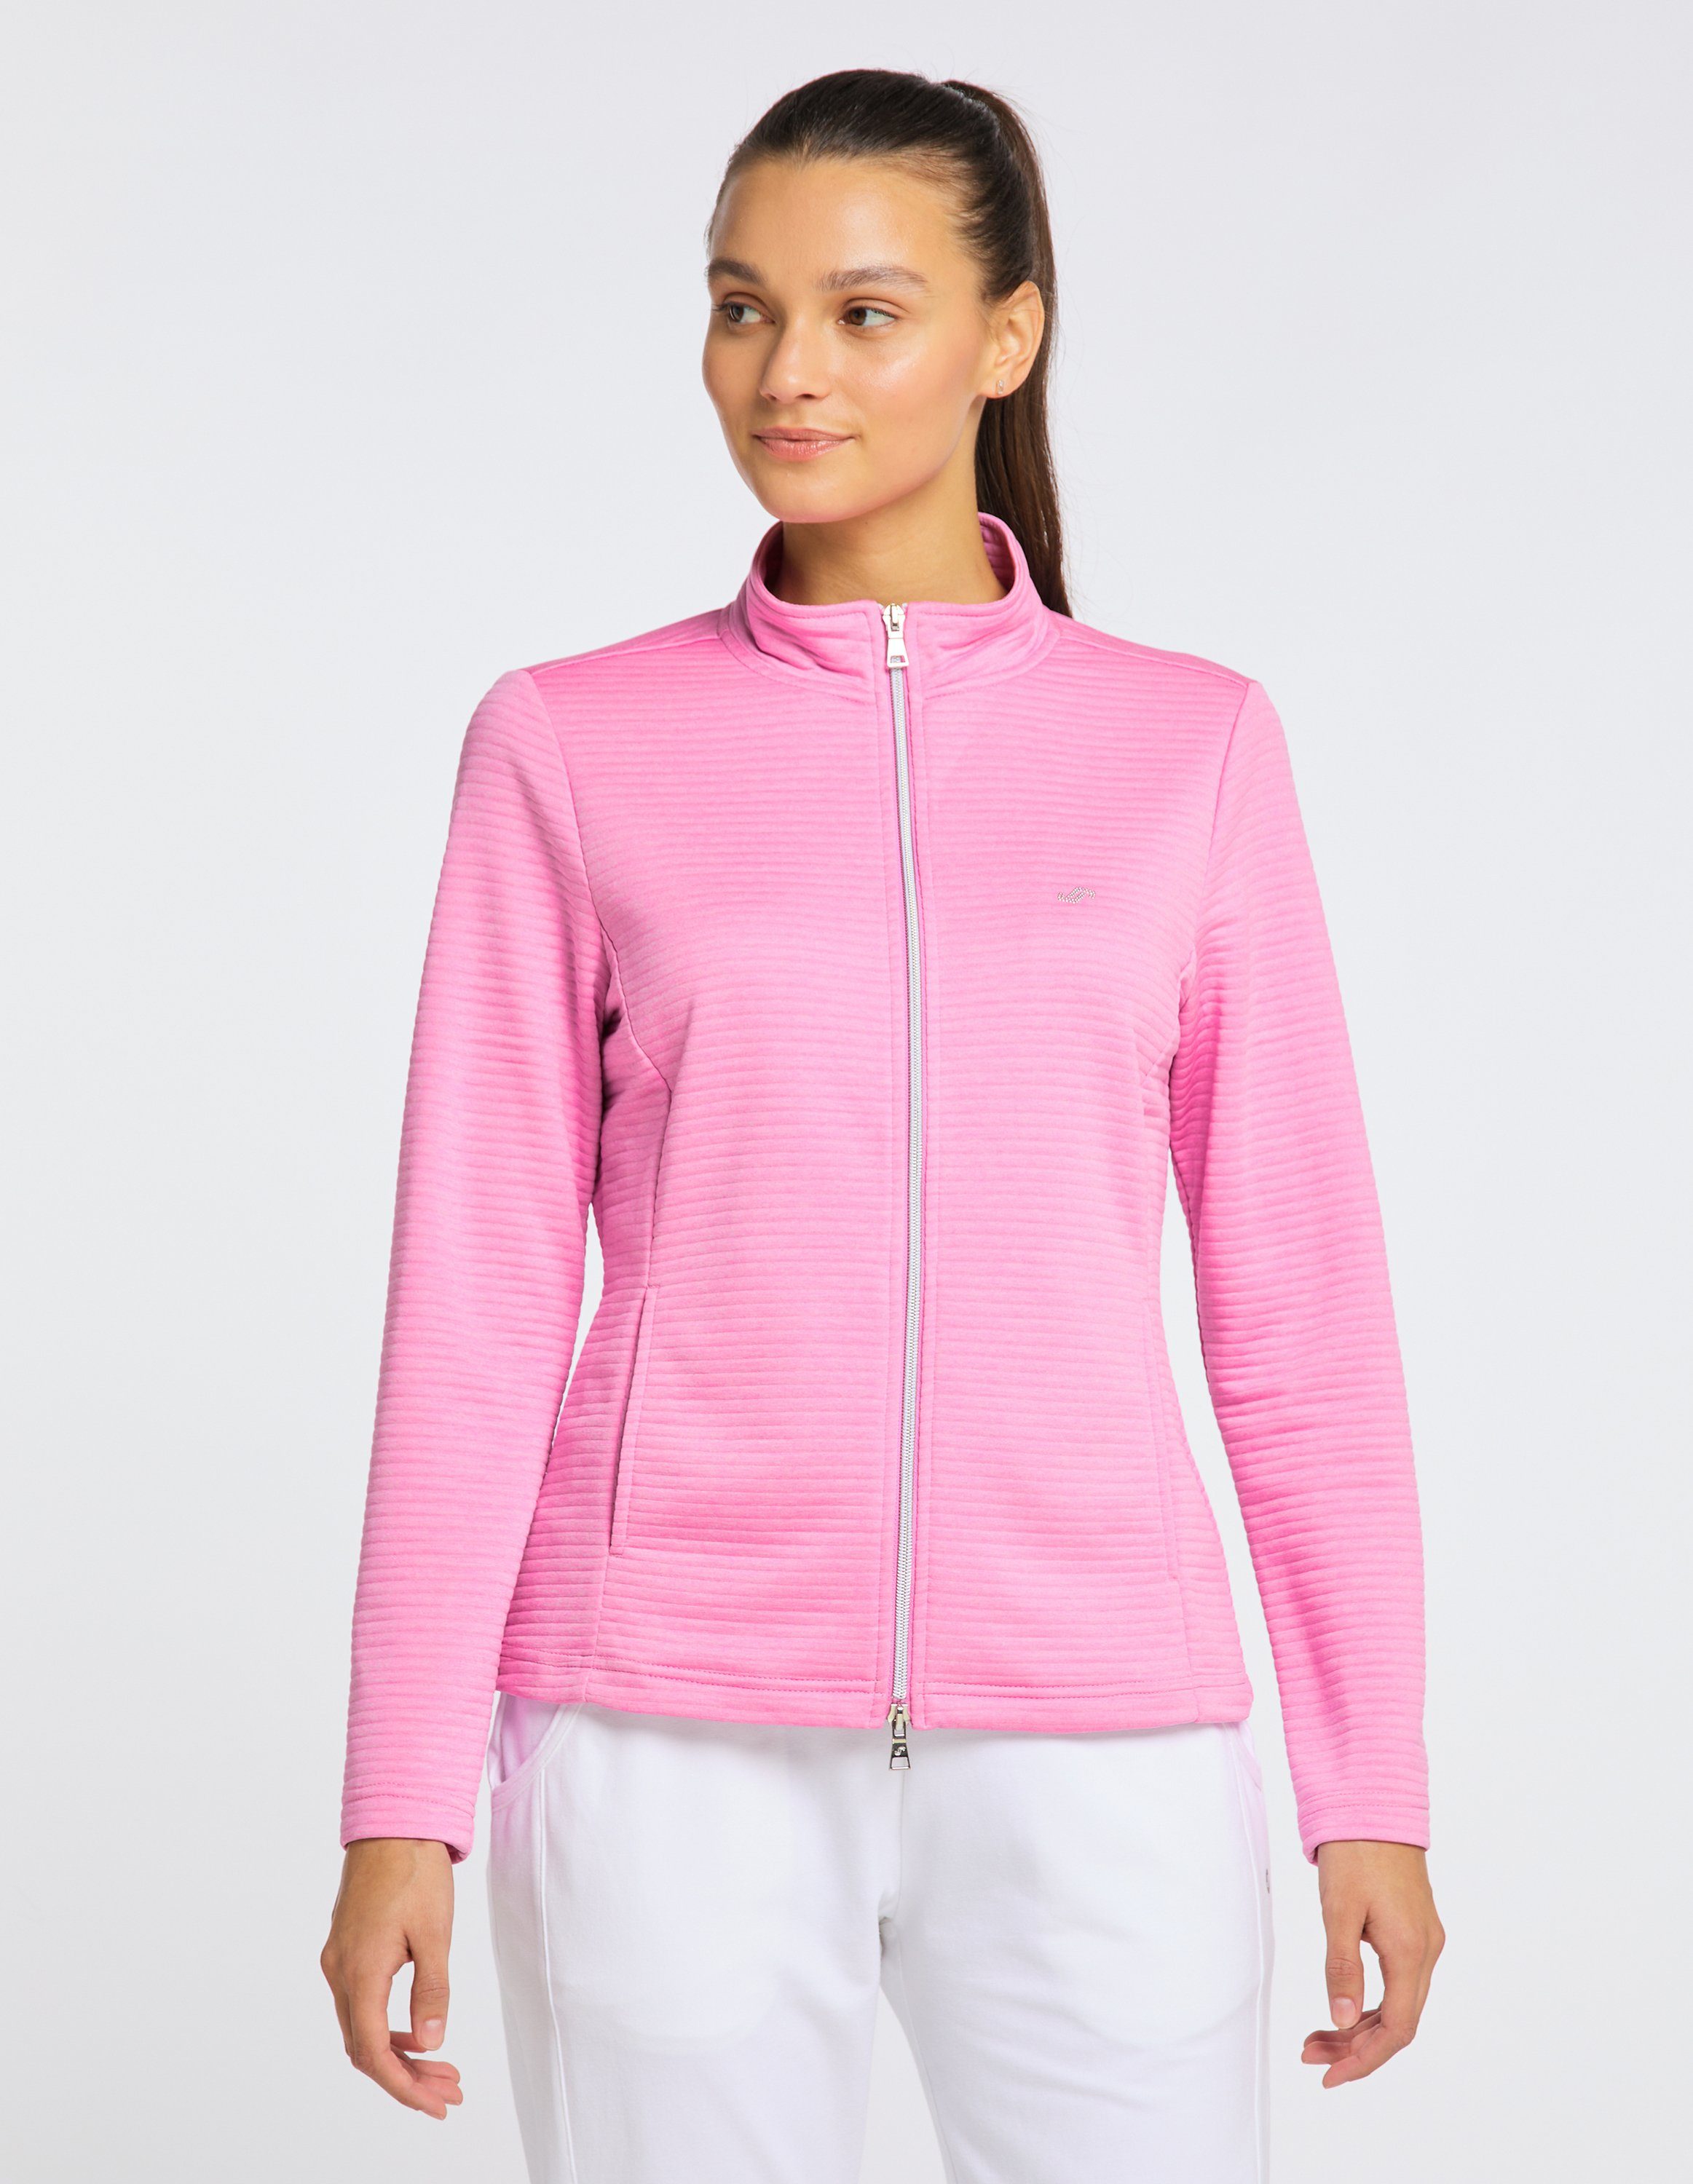 Jacke pink melange Trainingsjacke Joy cyclam Sportswear PEGGY